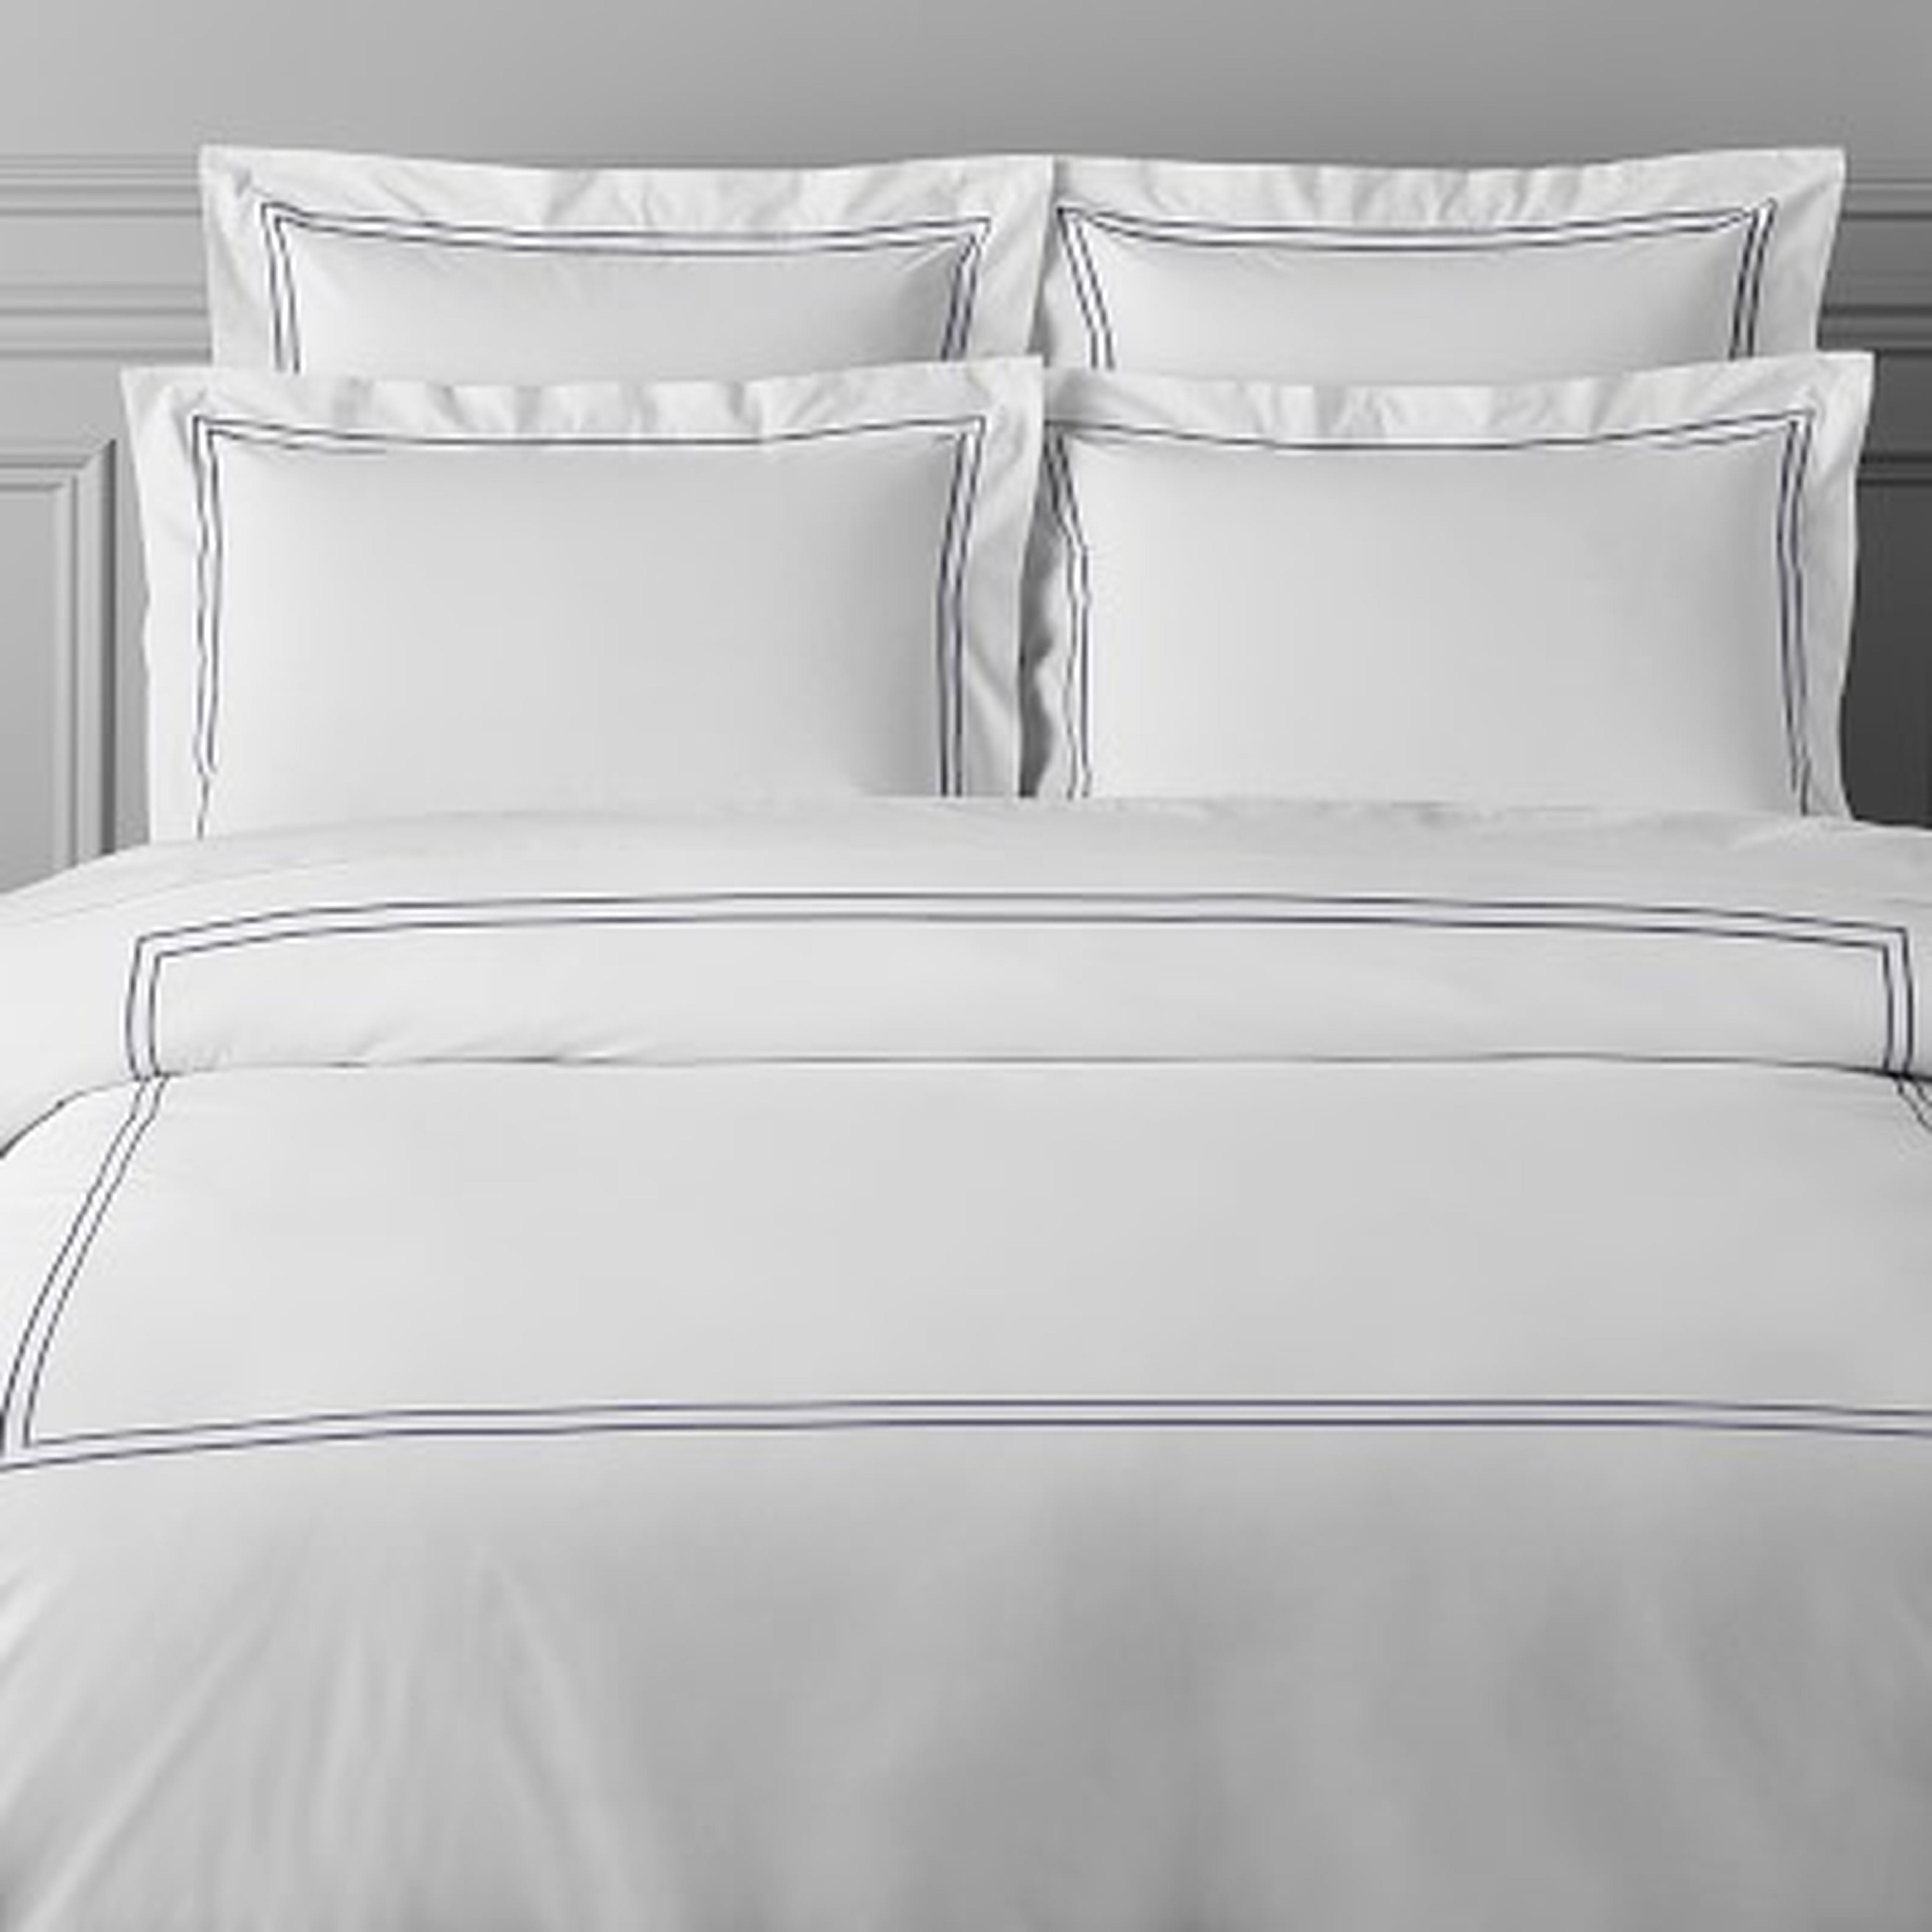 White Hotel Bedding, Duvet Cover, Full/Queen, Navy - Williams Sonoma